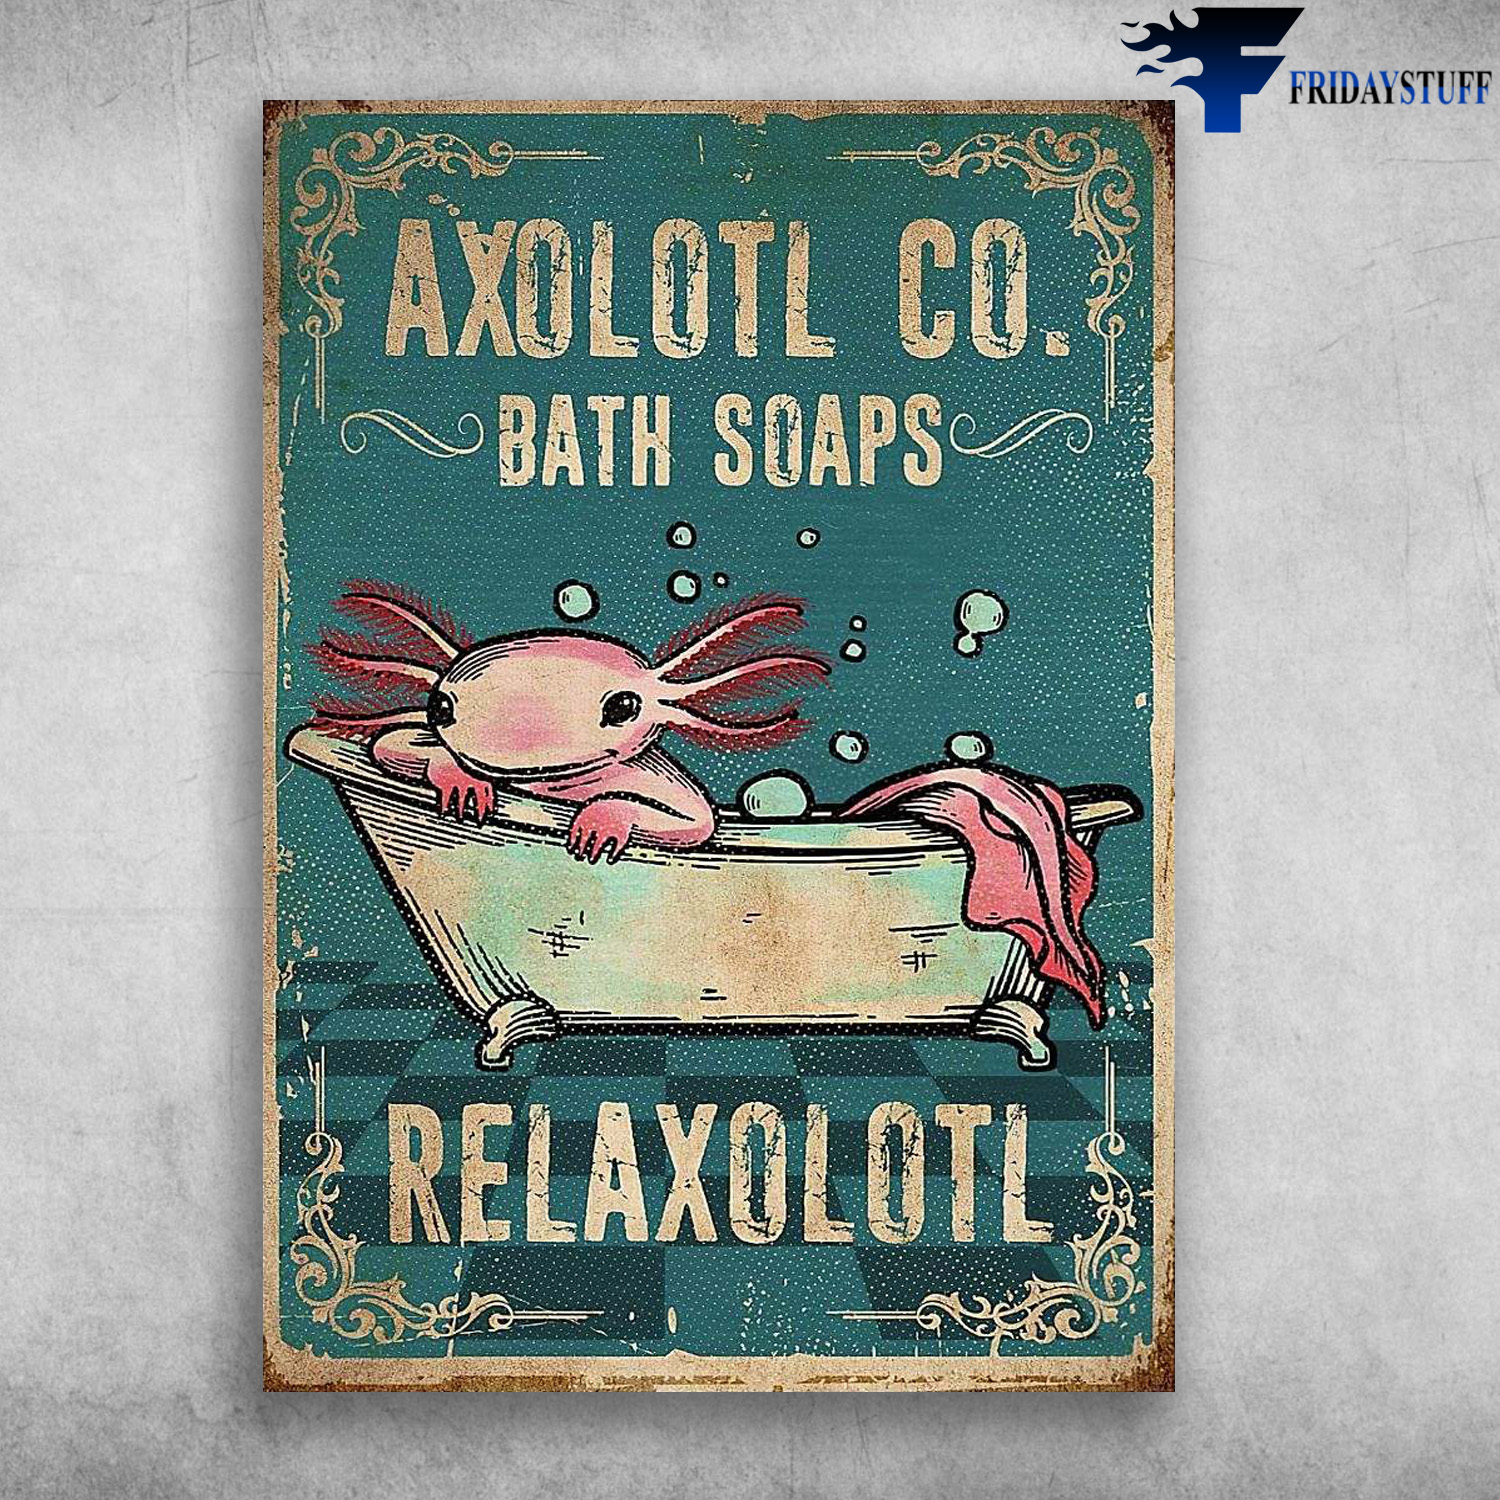 Axolotl In Bath - Axolotl CO., Bath Soaps, Relaxolotl